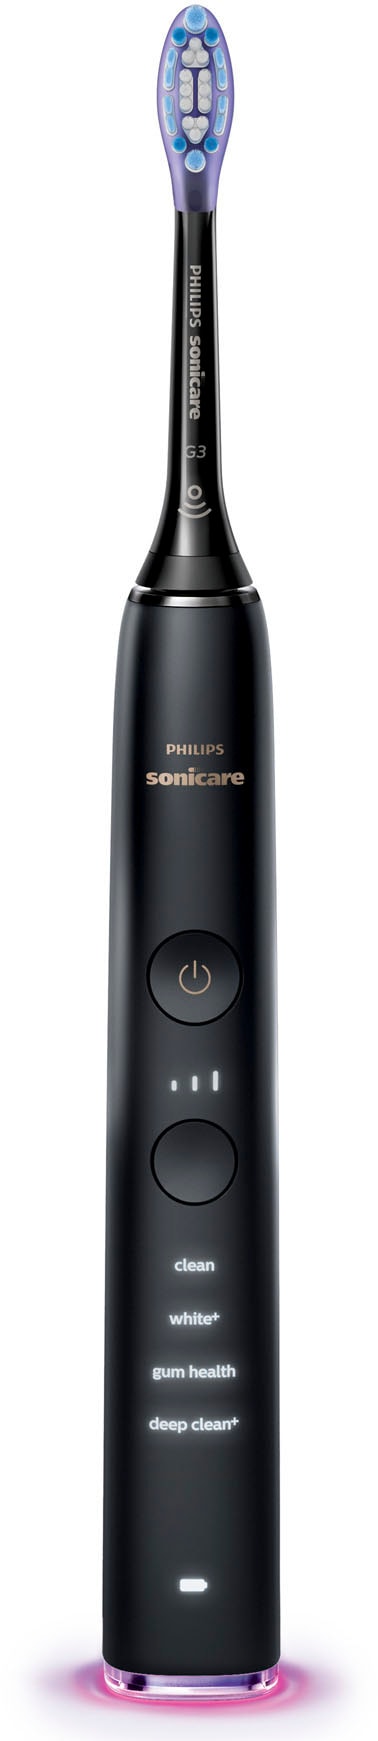 Putzprogramme Philips Zahnbürste mit XXL Sonicare Drücksensor, integriertem HX9917«, Elektrische 9400, Intensitätsstufen Garantie Jahren 2 St. 3 »DiamondClean Aufsteckbürsten, und mit 3 4